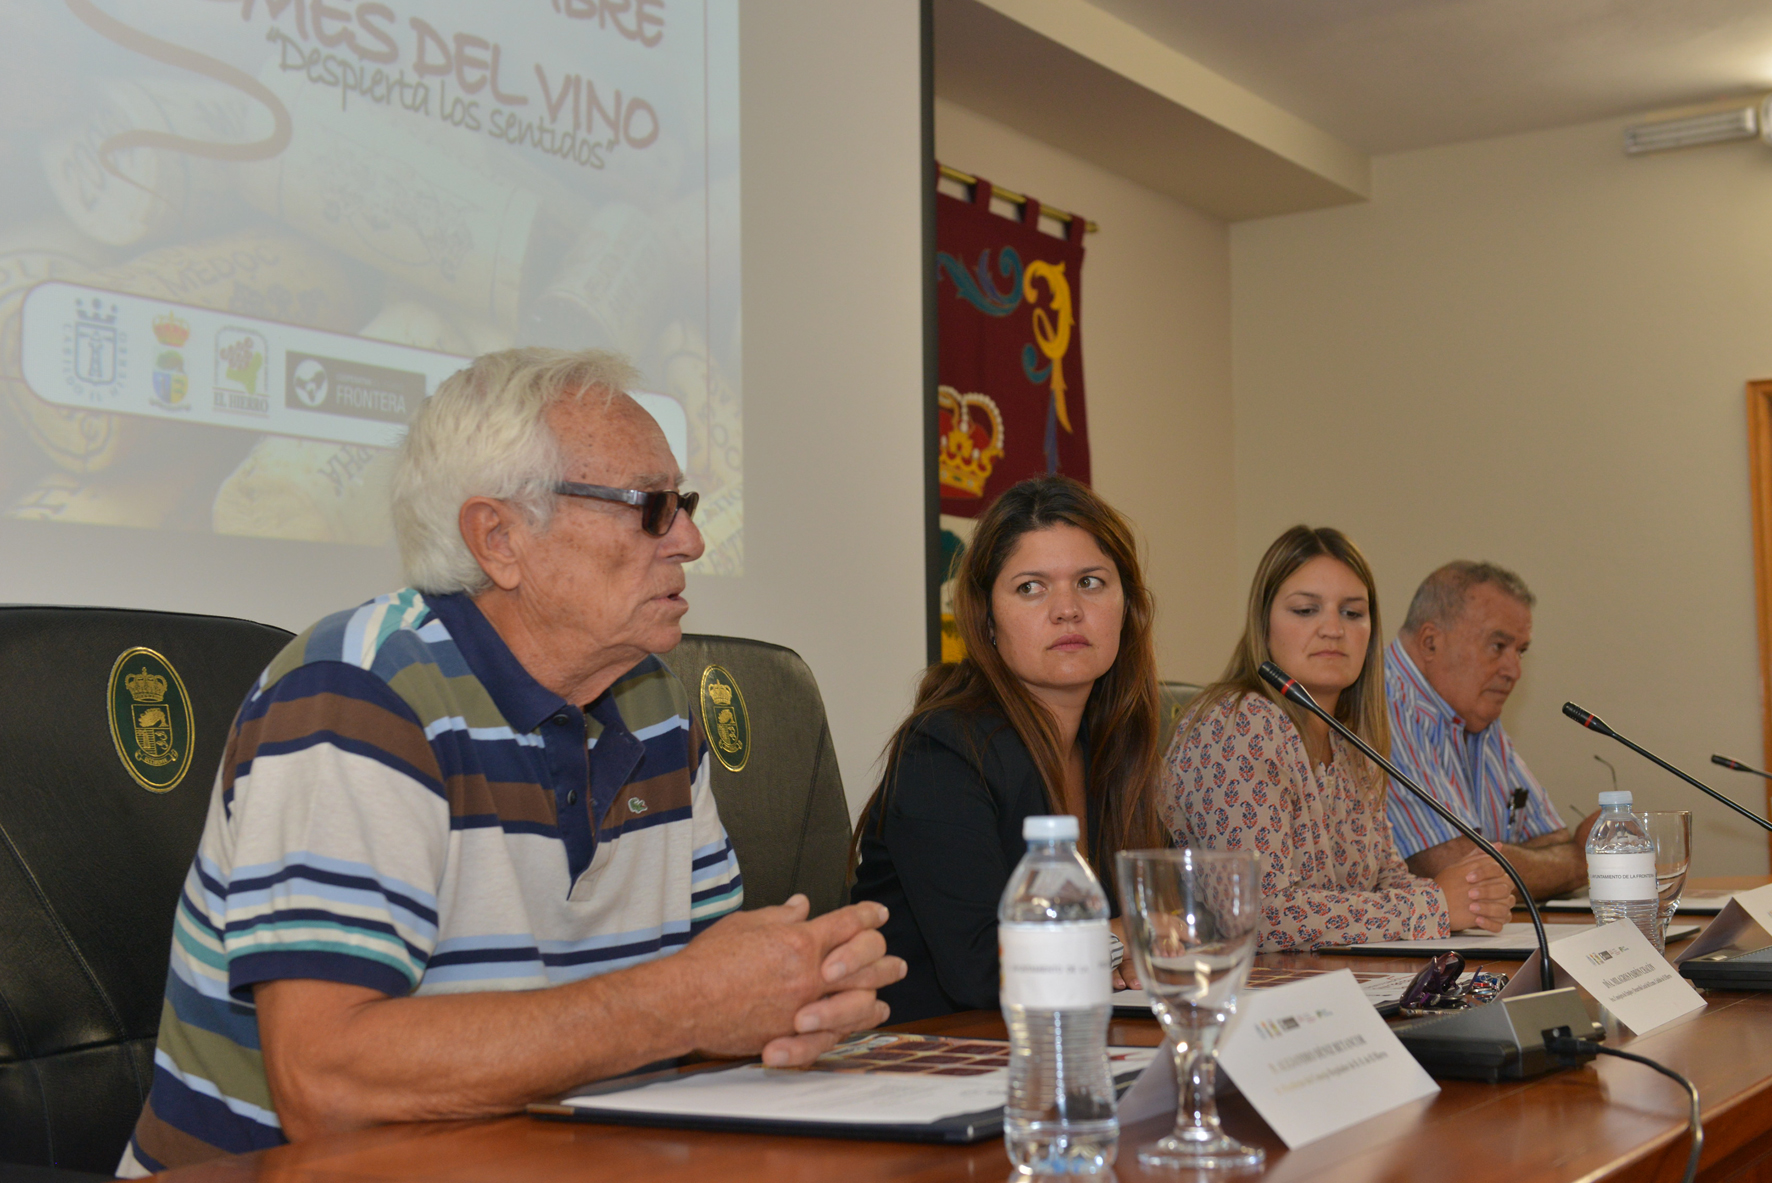 La Frontera presenta “Noviembre, mes del vino” un programa de promoción de la cultura vitivinícola de El Hierro